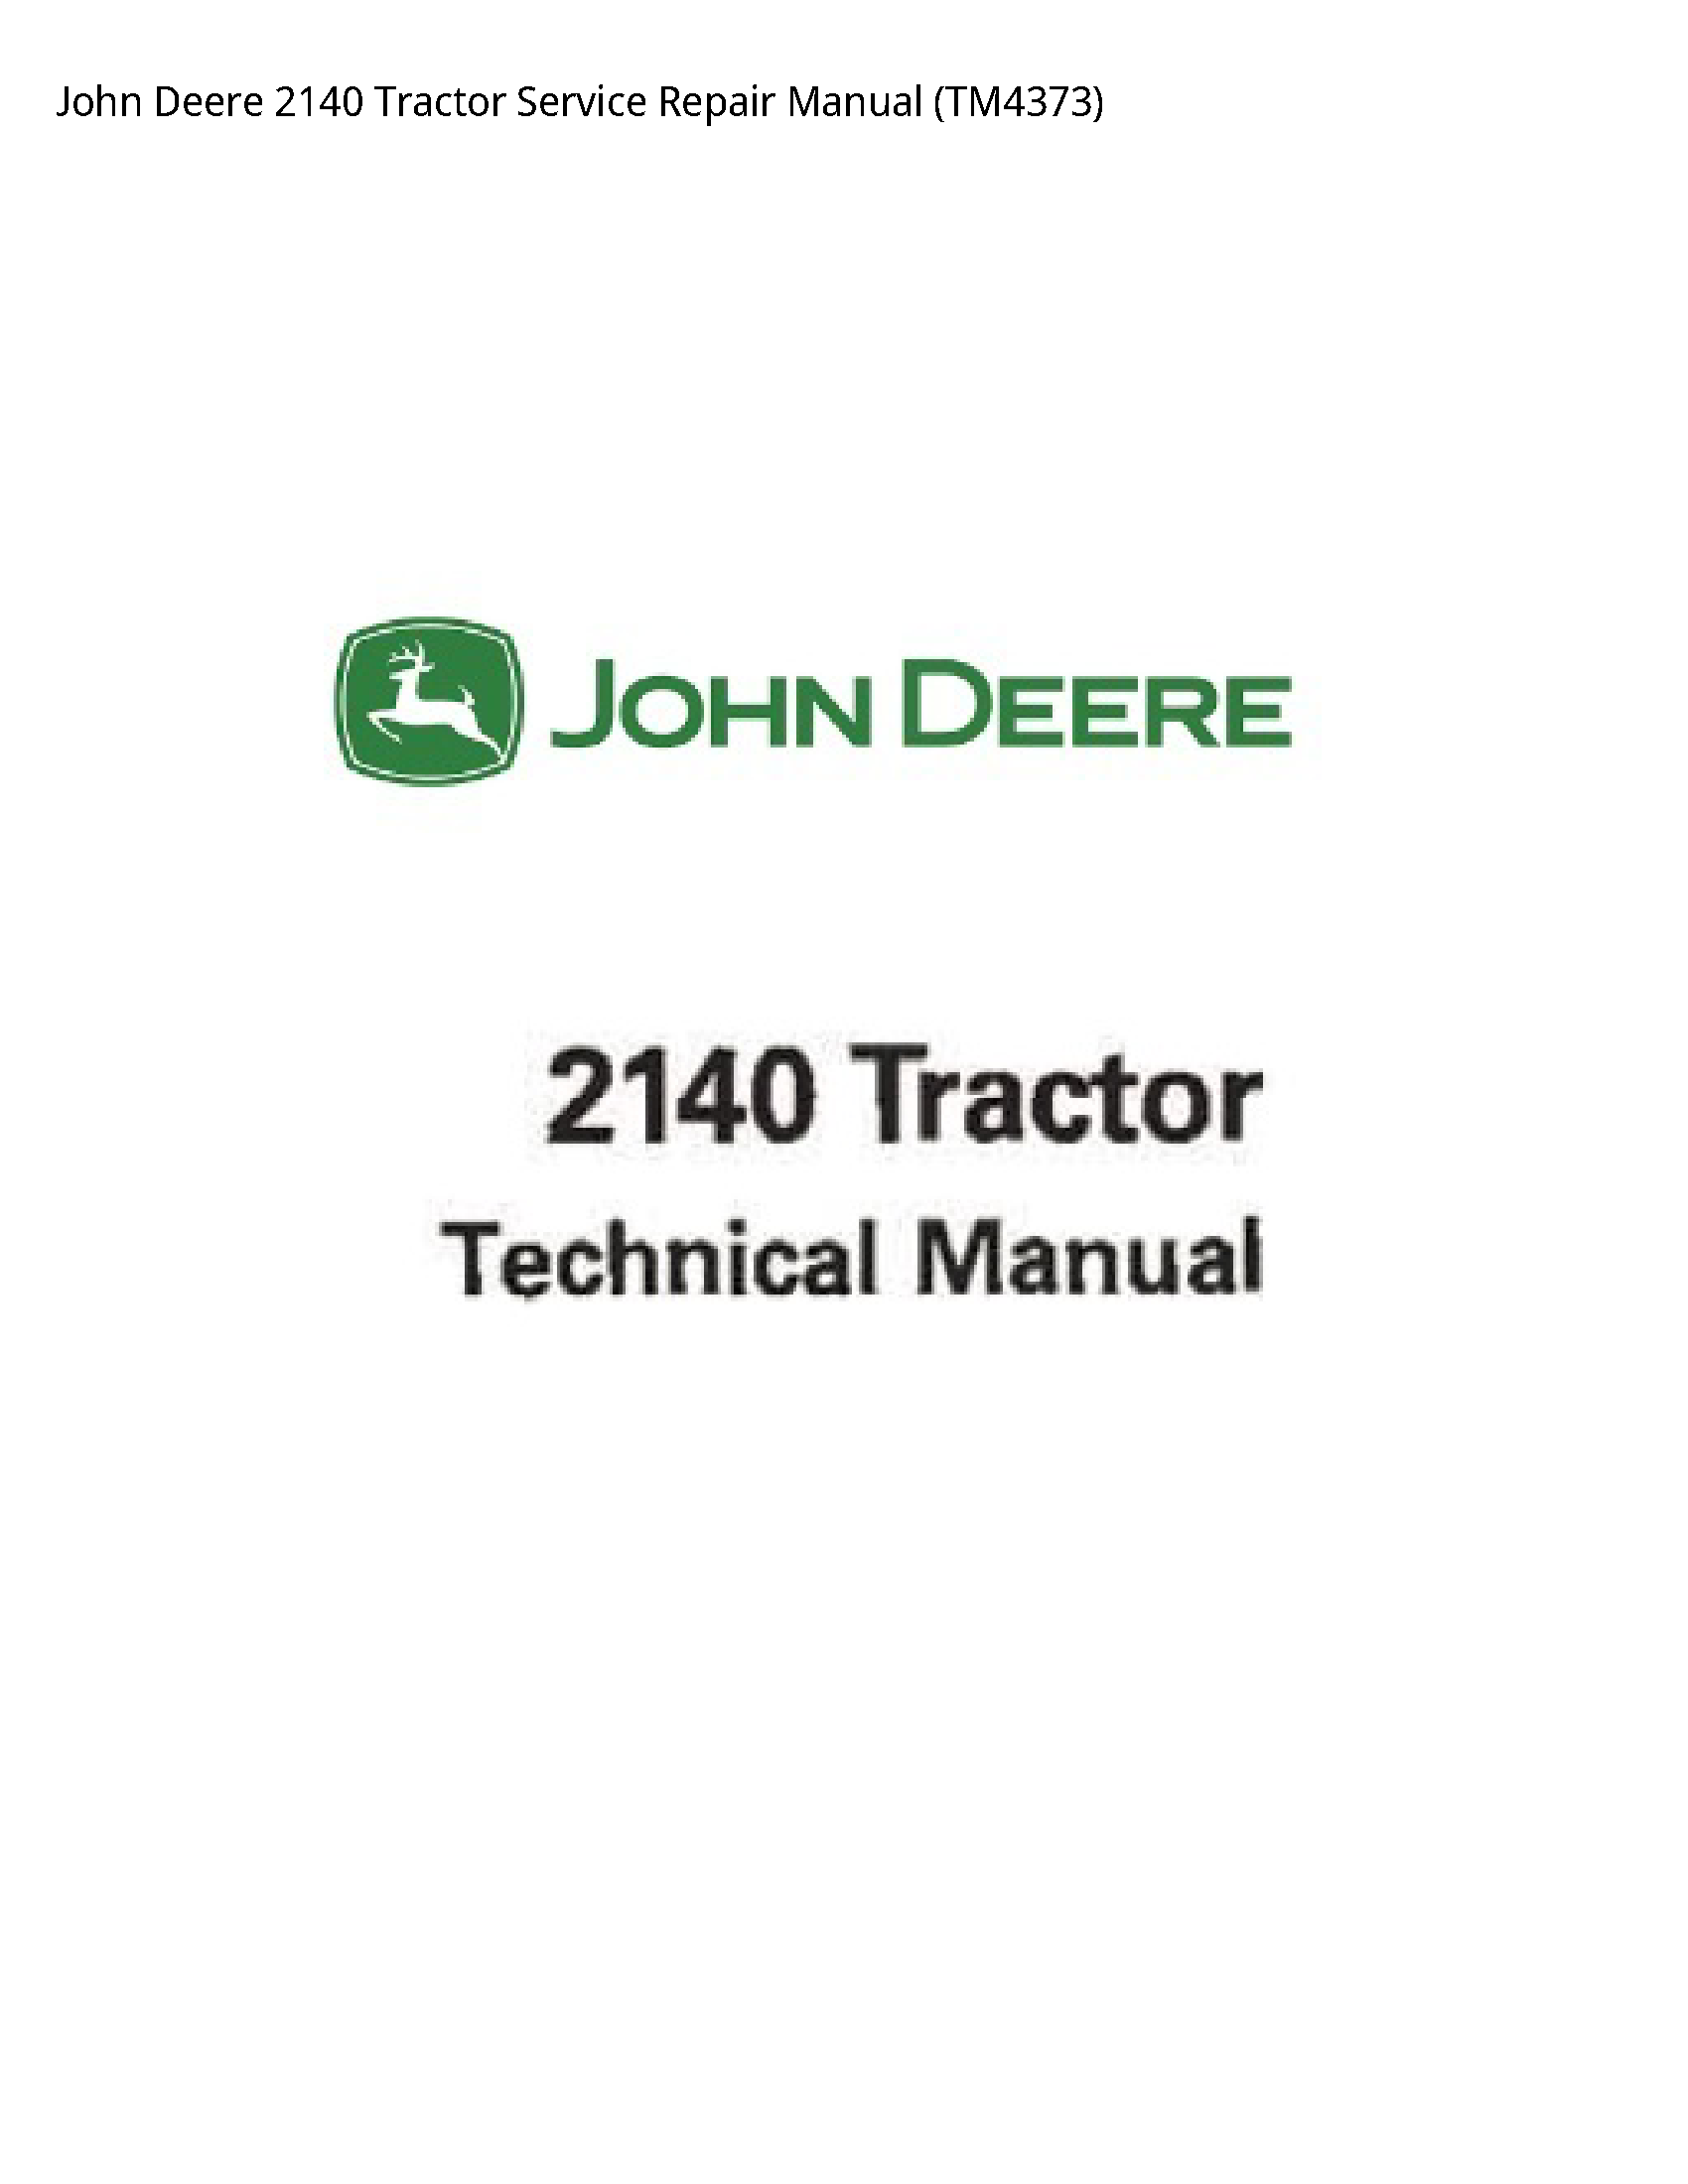 John Deere 2140 Tractor manual